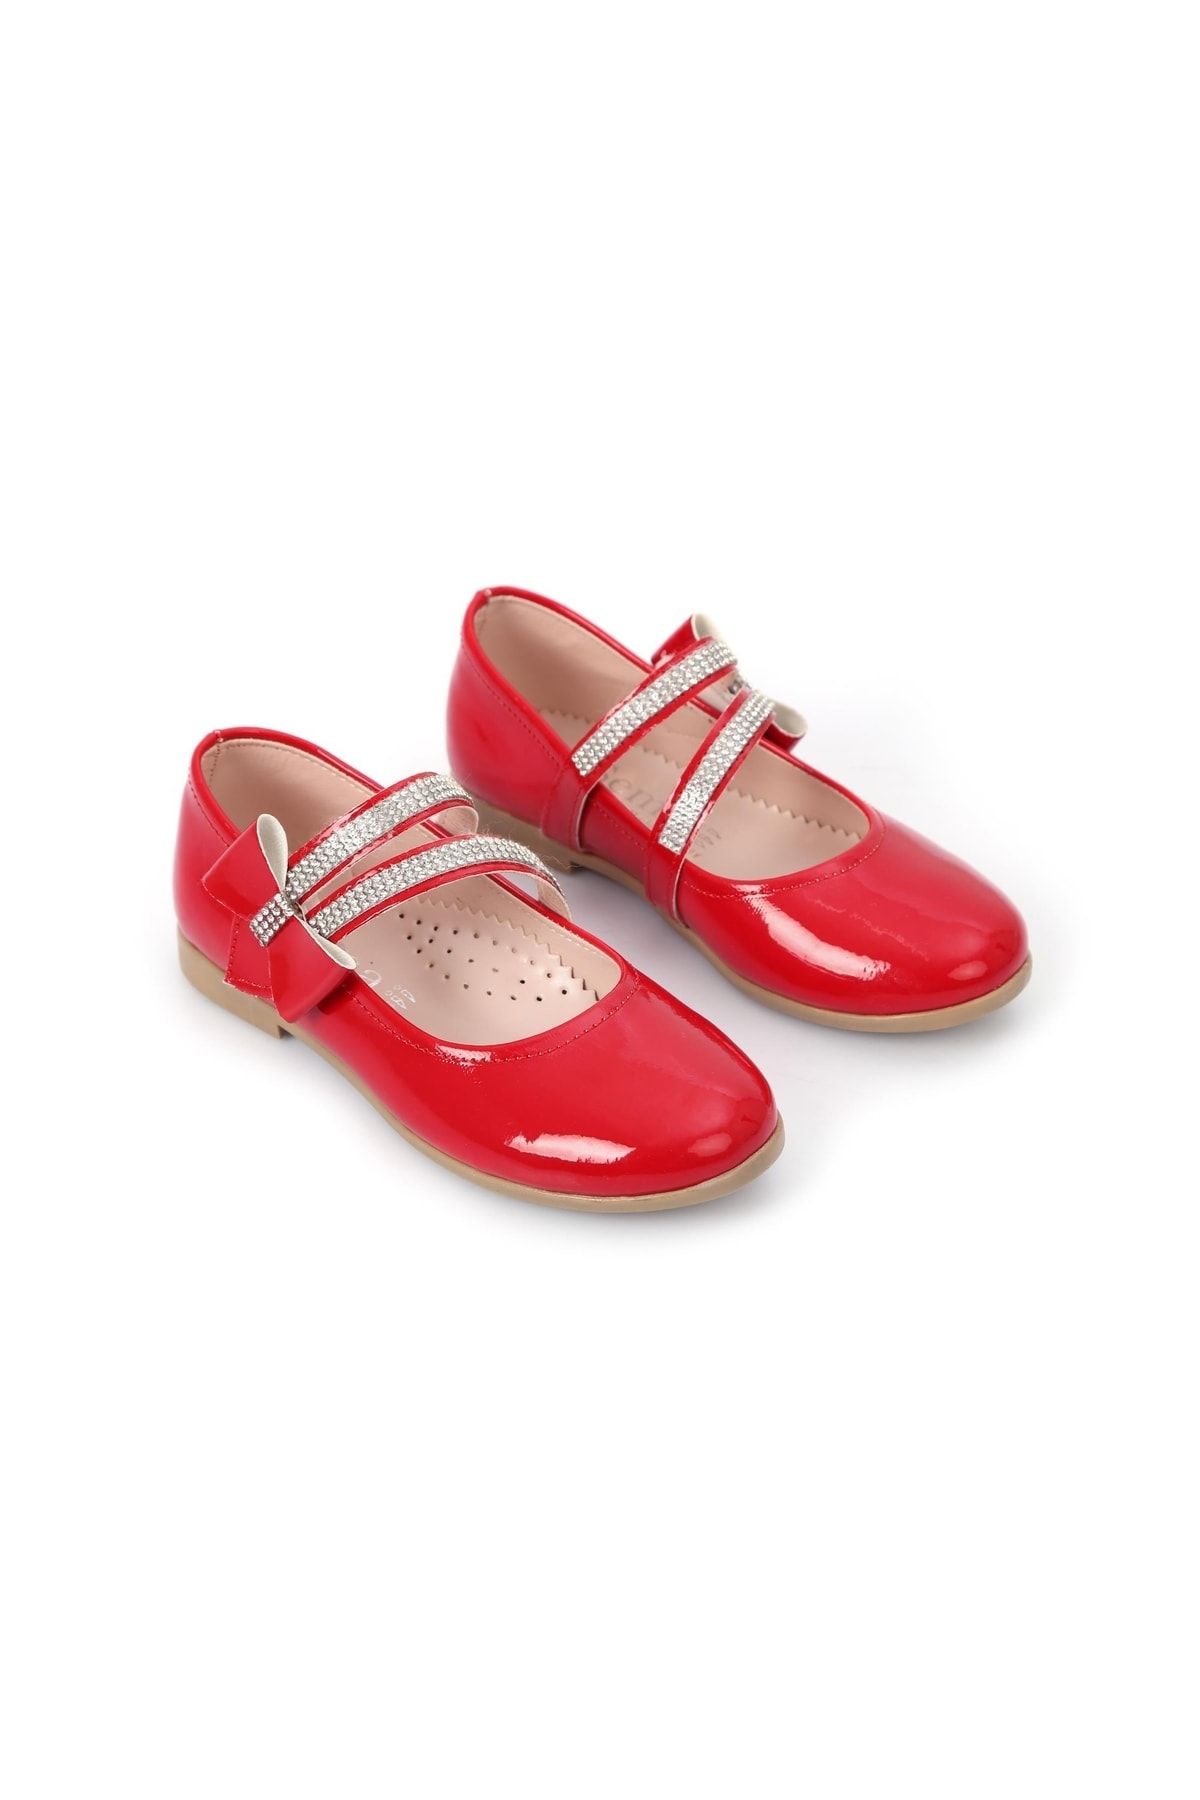 Mashotrend Kırmızı Parlak Babet Ayakkabı - Gri Kemerli Kız Çocuk Abiye Ayakkabı - Kız Çocuk Gösteri Ayakkabısı